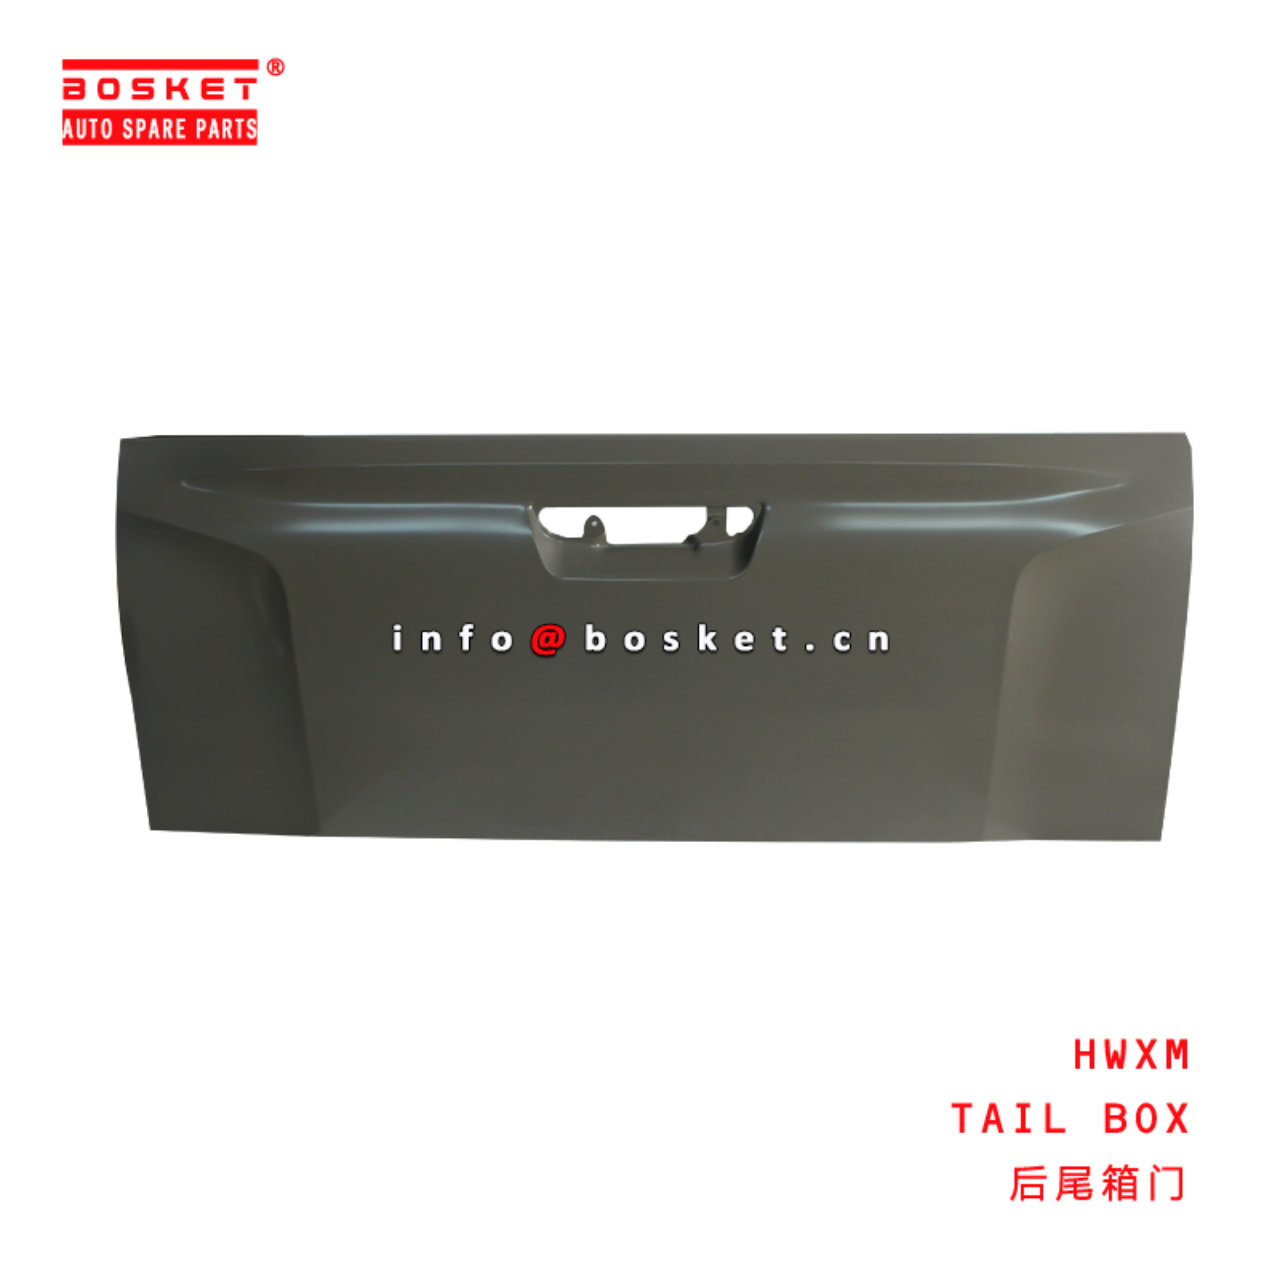 HWXM TAIL BOX suitable for ISUZU Dmax 2021  HWXM